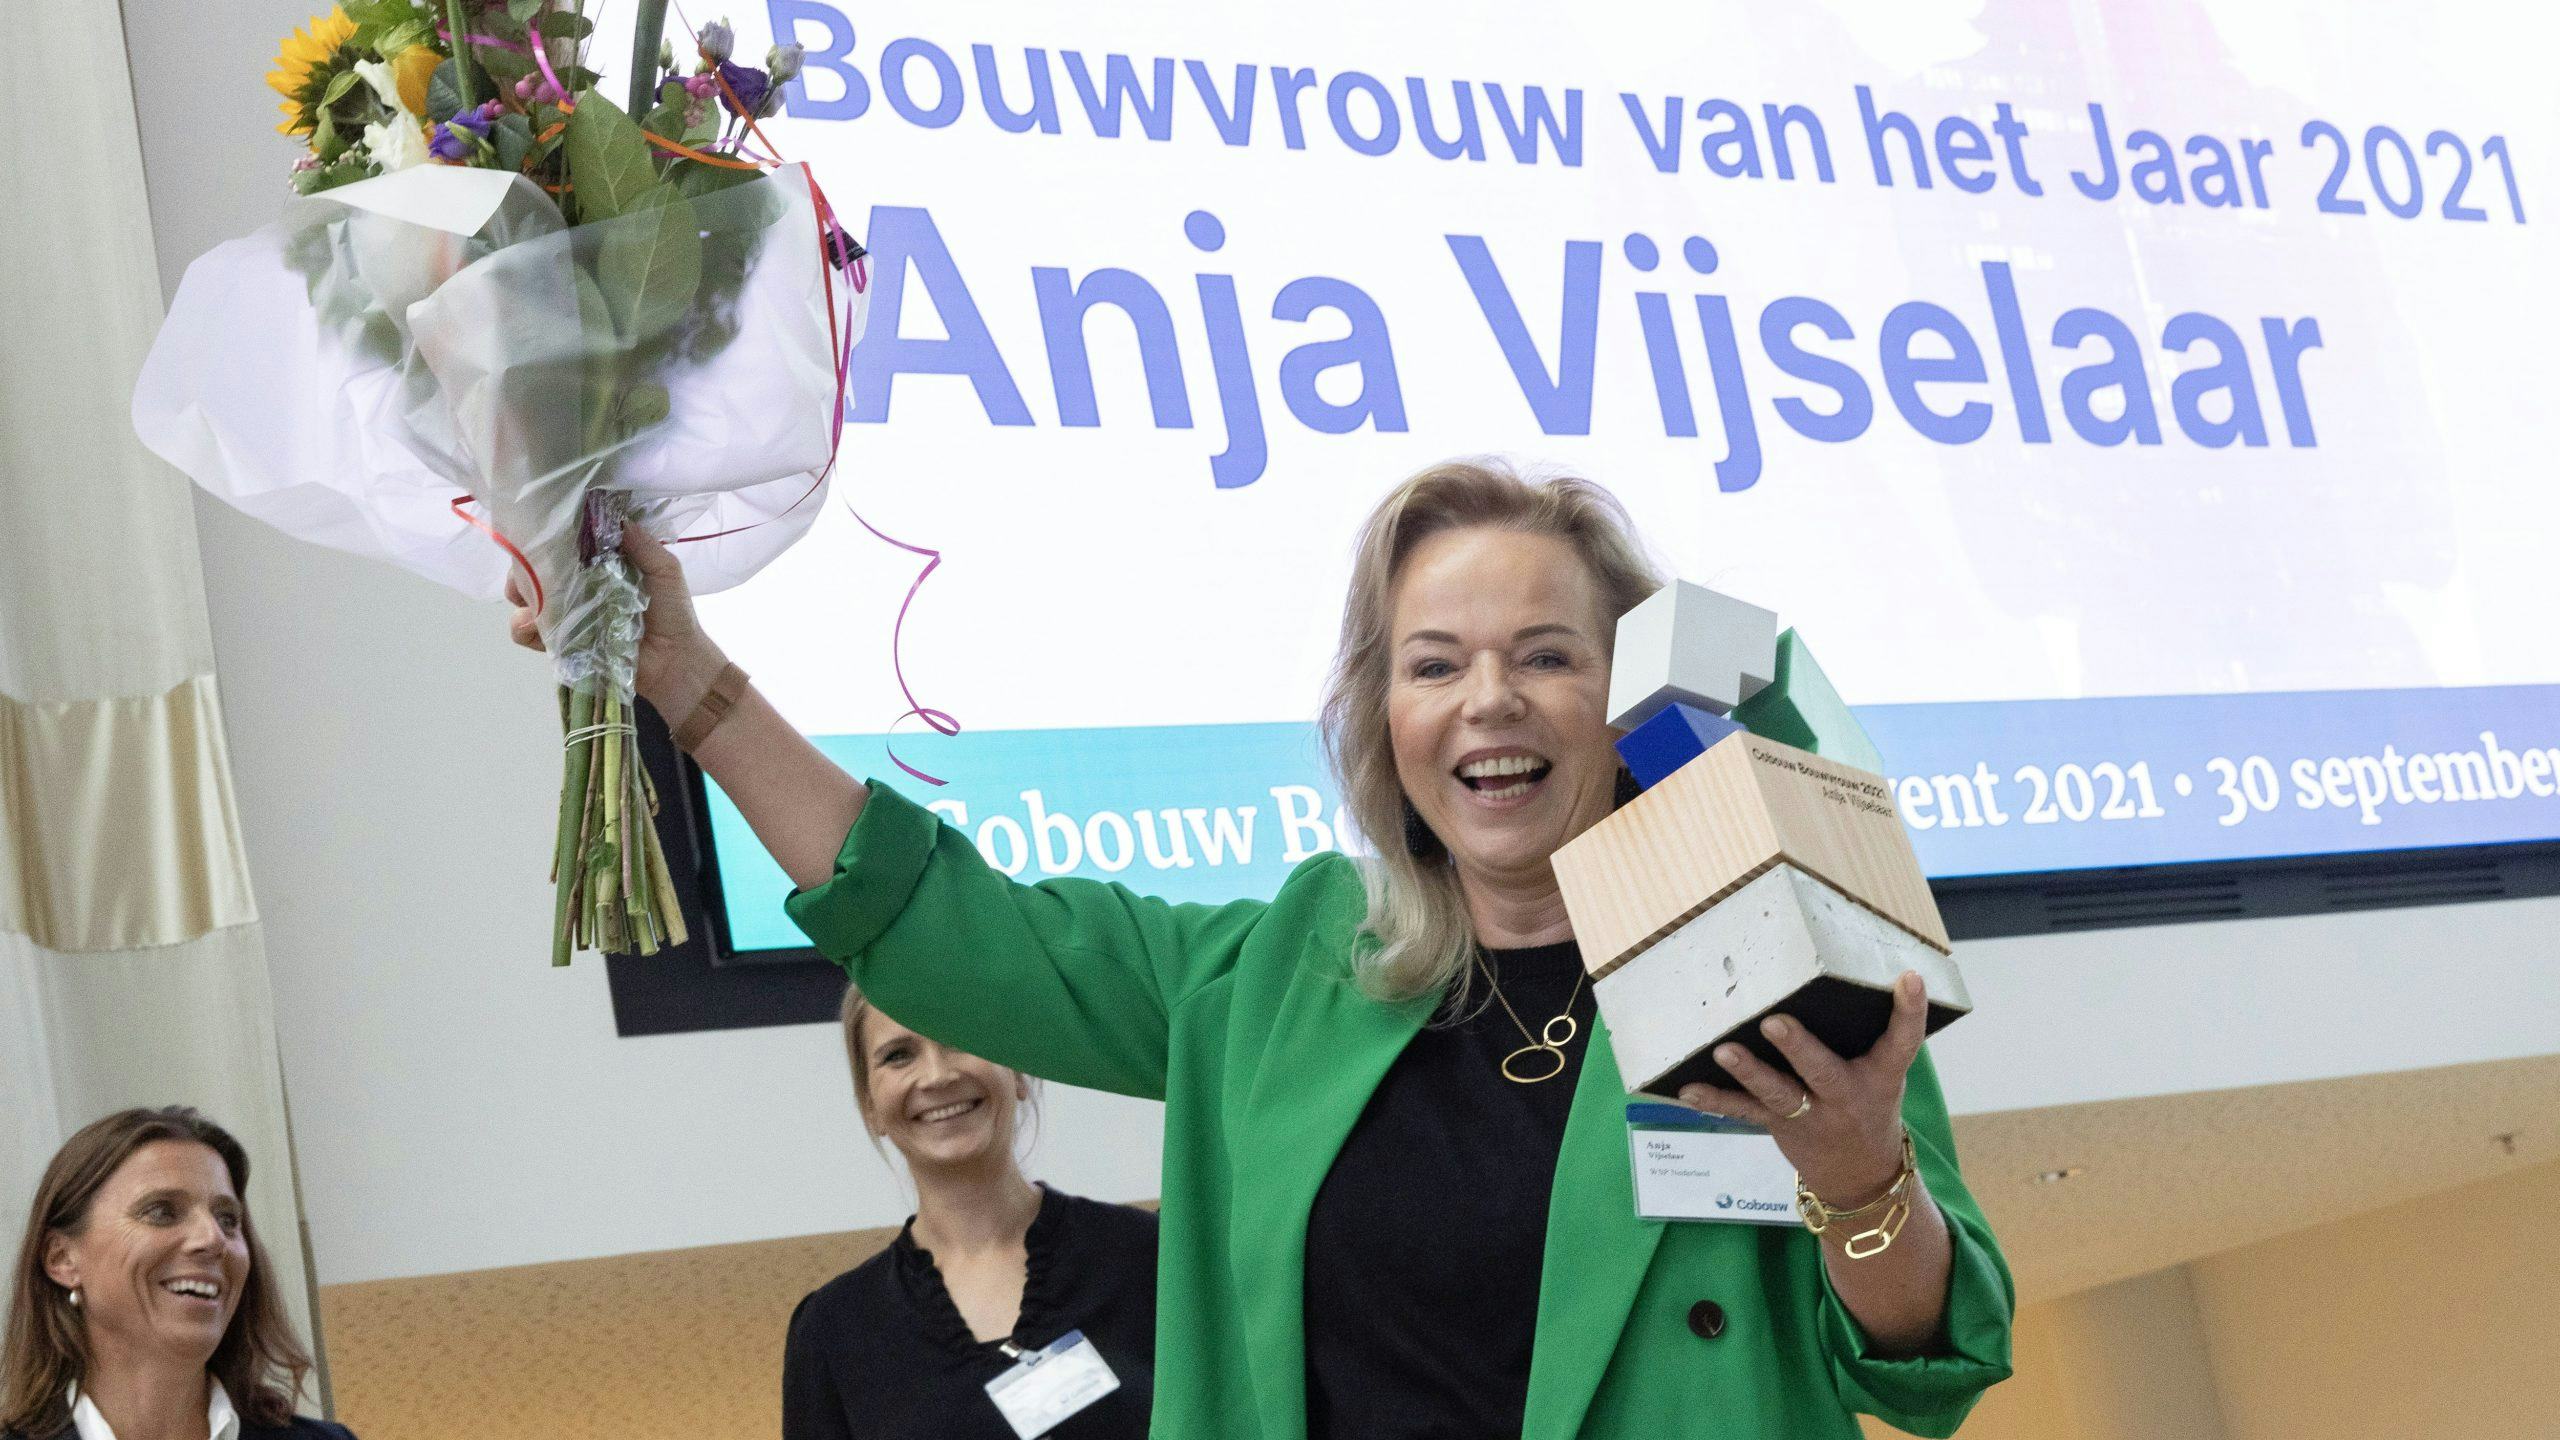 Bouwvrouw van het jaar 2021 Anja Vijselaar.
Foto: Sjef Prins - APA Foto